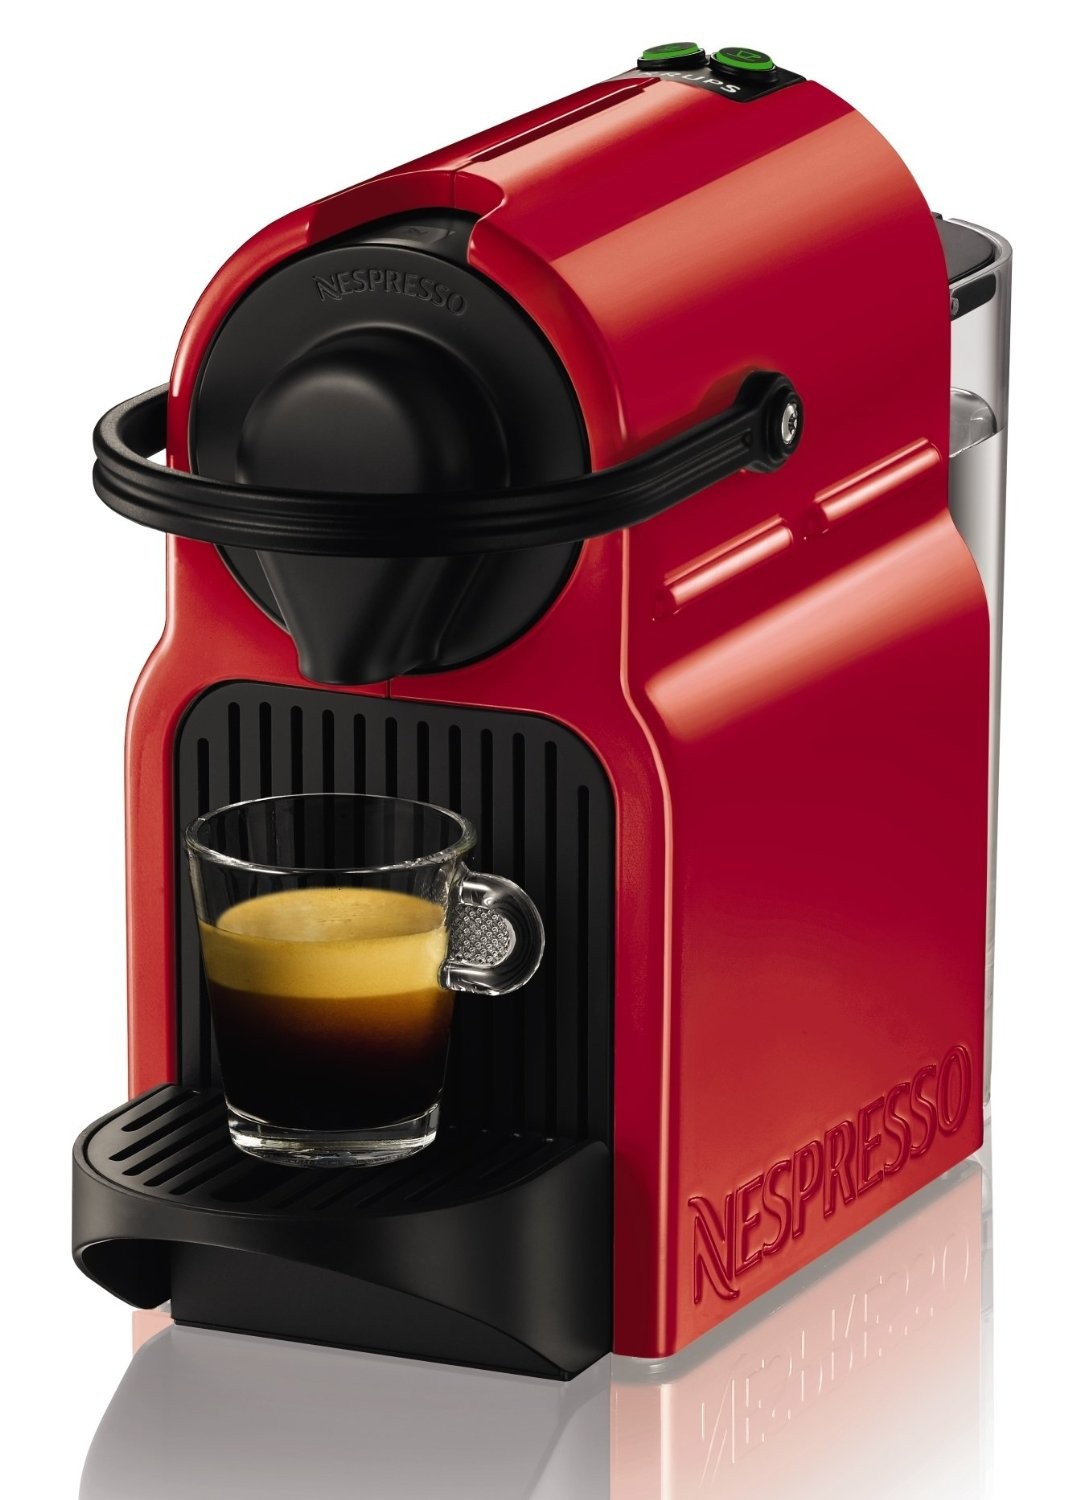 We For Nespresso: la macchina del caffè per il tuo ufficio